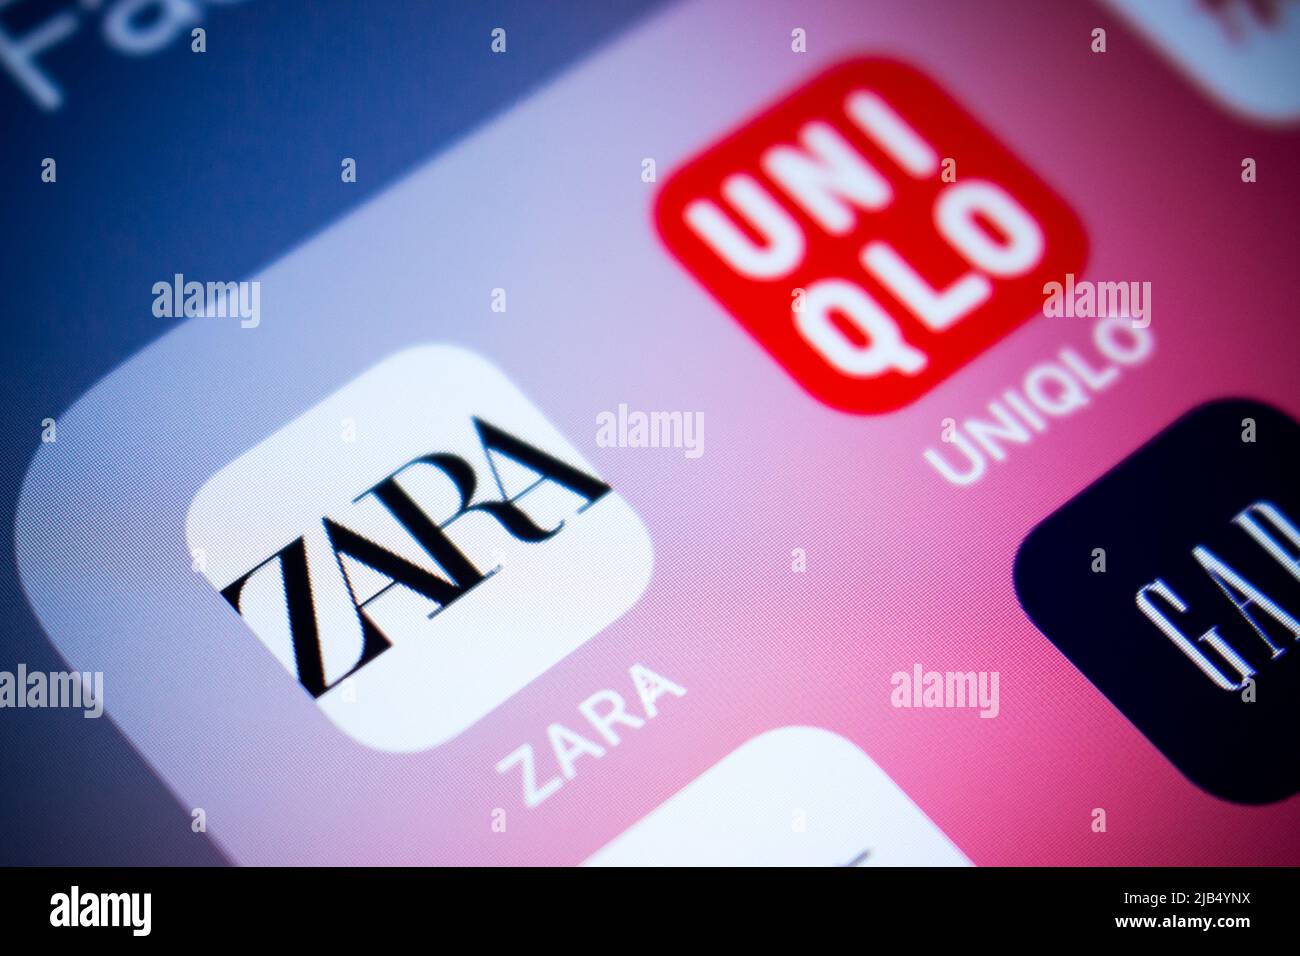 Logo von Zara, einem spanischen Bekleidungshändler mit Sitz in Galicien, auf iOS. Zara ist auf schnelle Mode spezialisiert, zu den Produkten gehören Kleidung und Accessoires Stockfoto